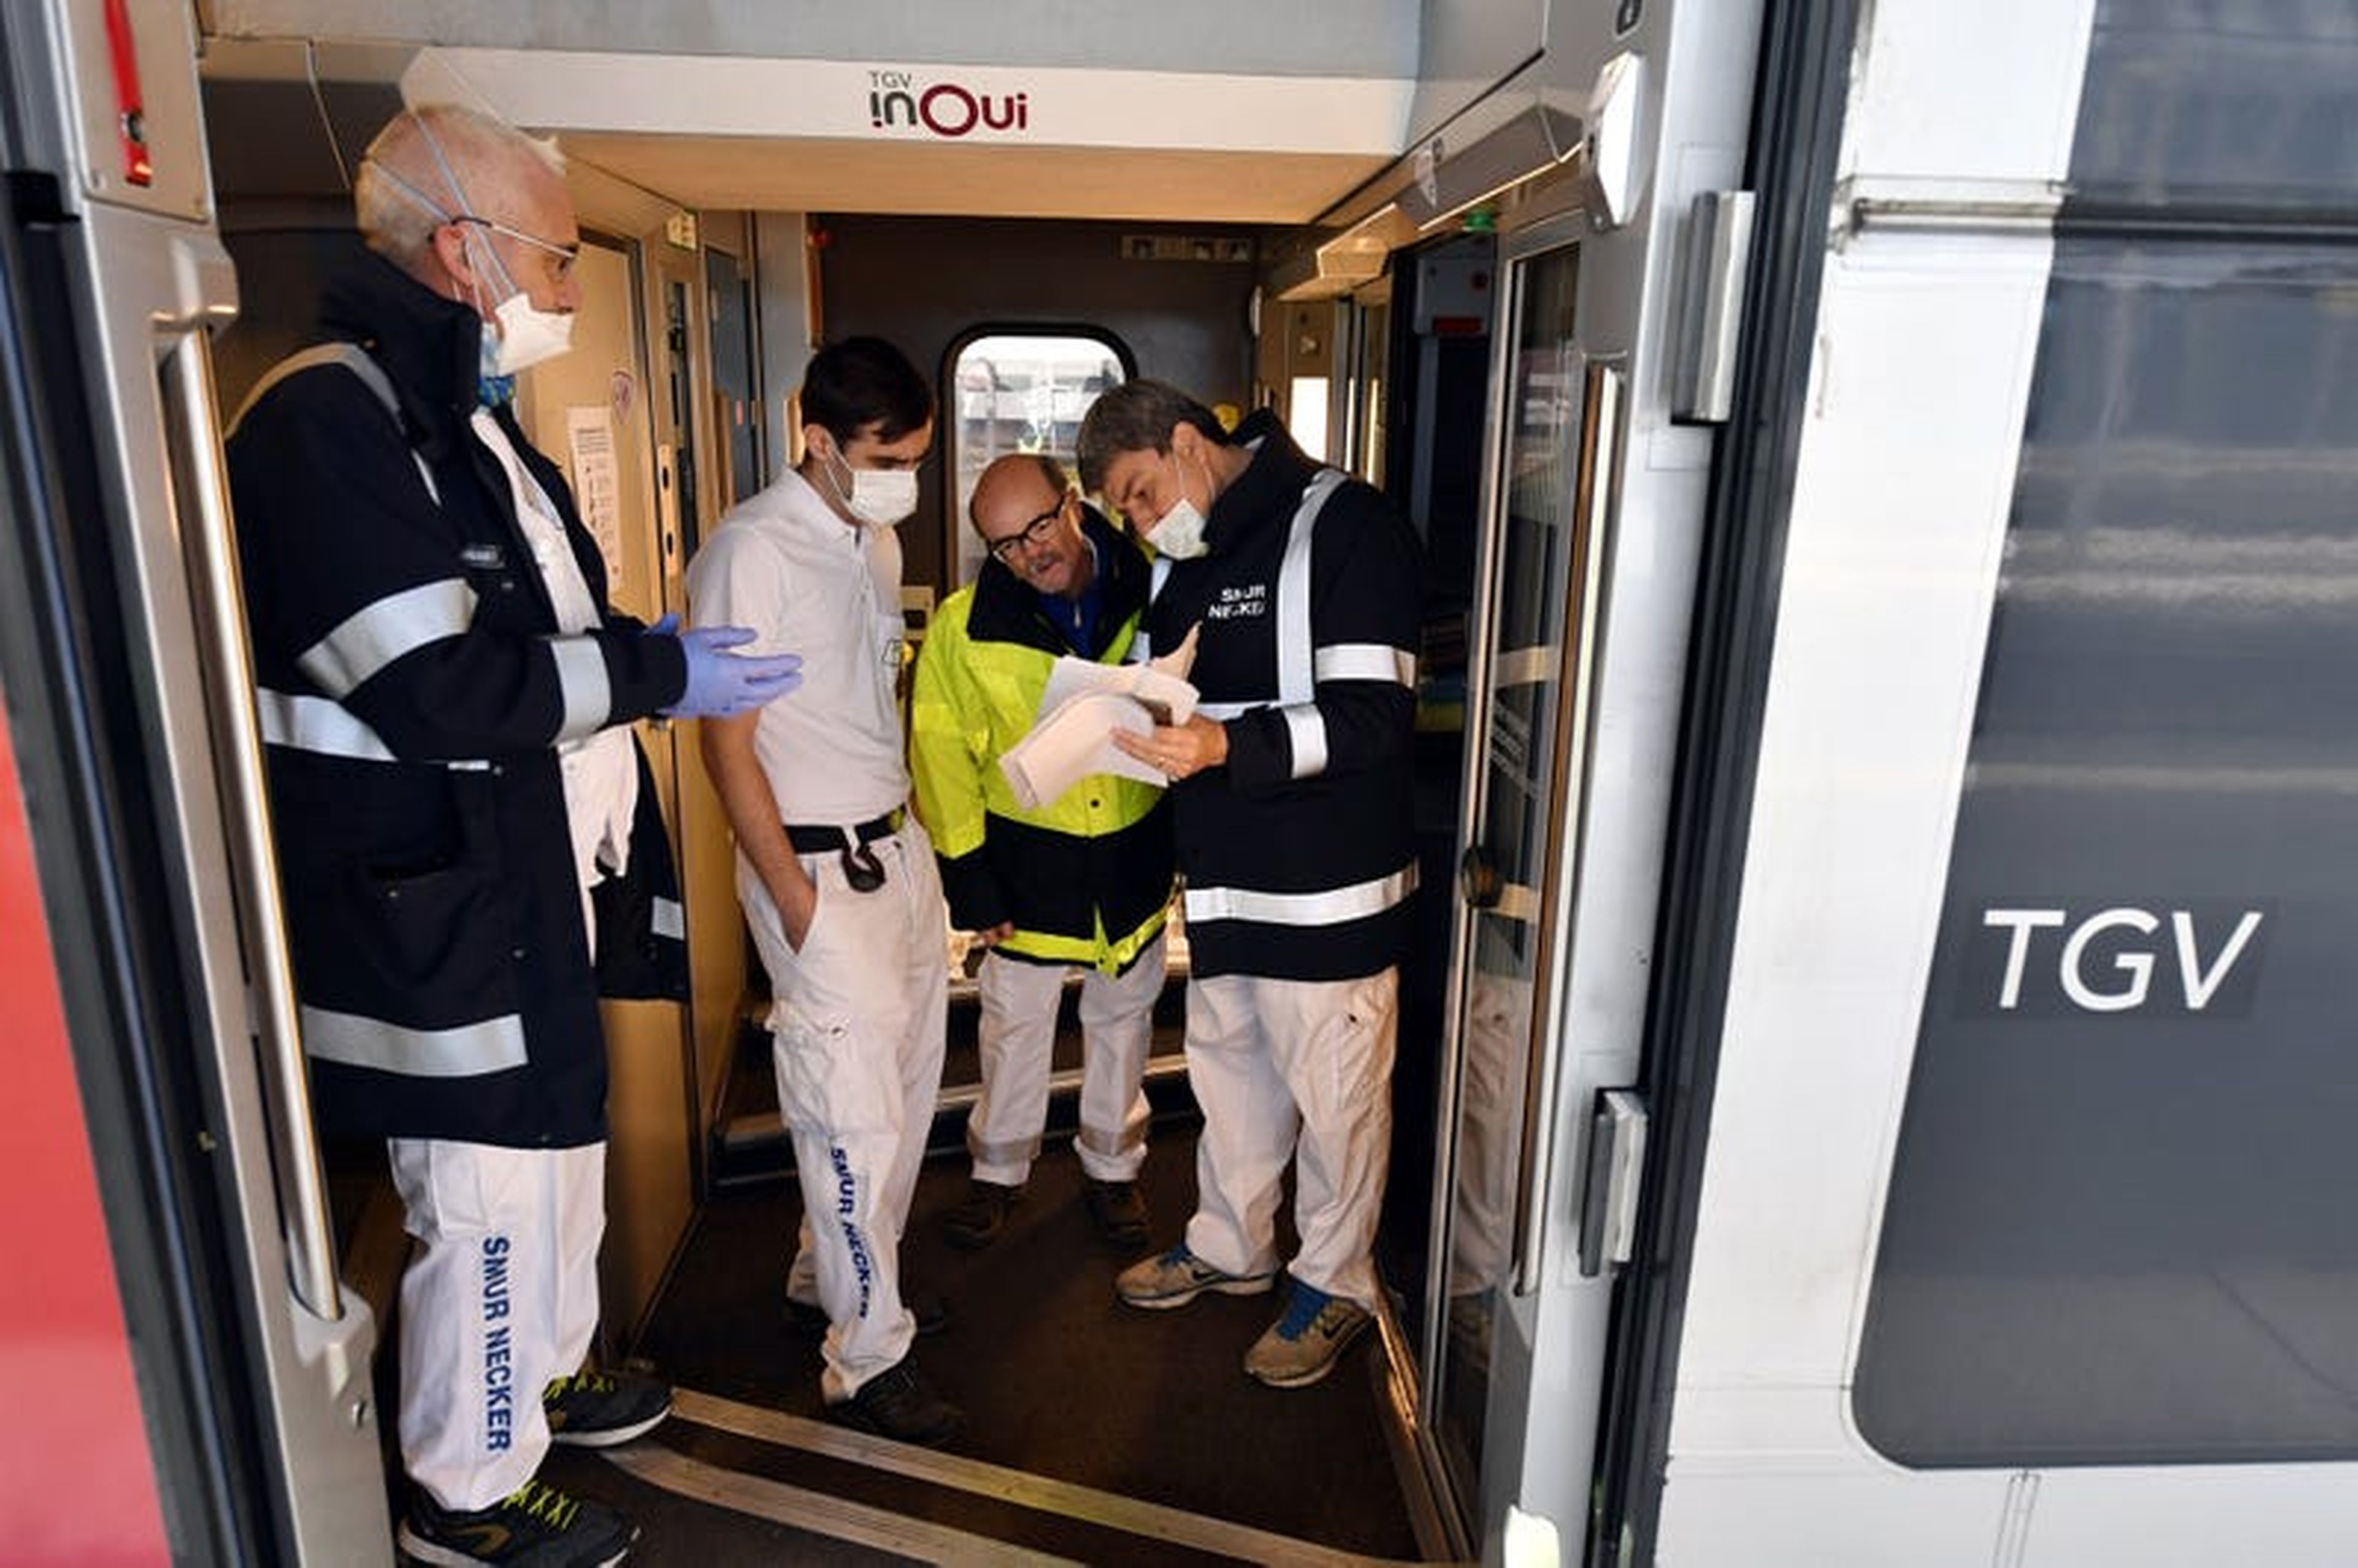 El jefe de la unidad de emergencia de un hospital hablando con un anestesista y coordinador de los trenes COVID-19 en el TGV el 29 de marzo.